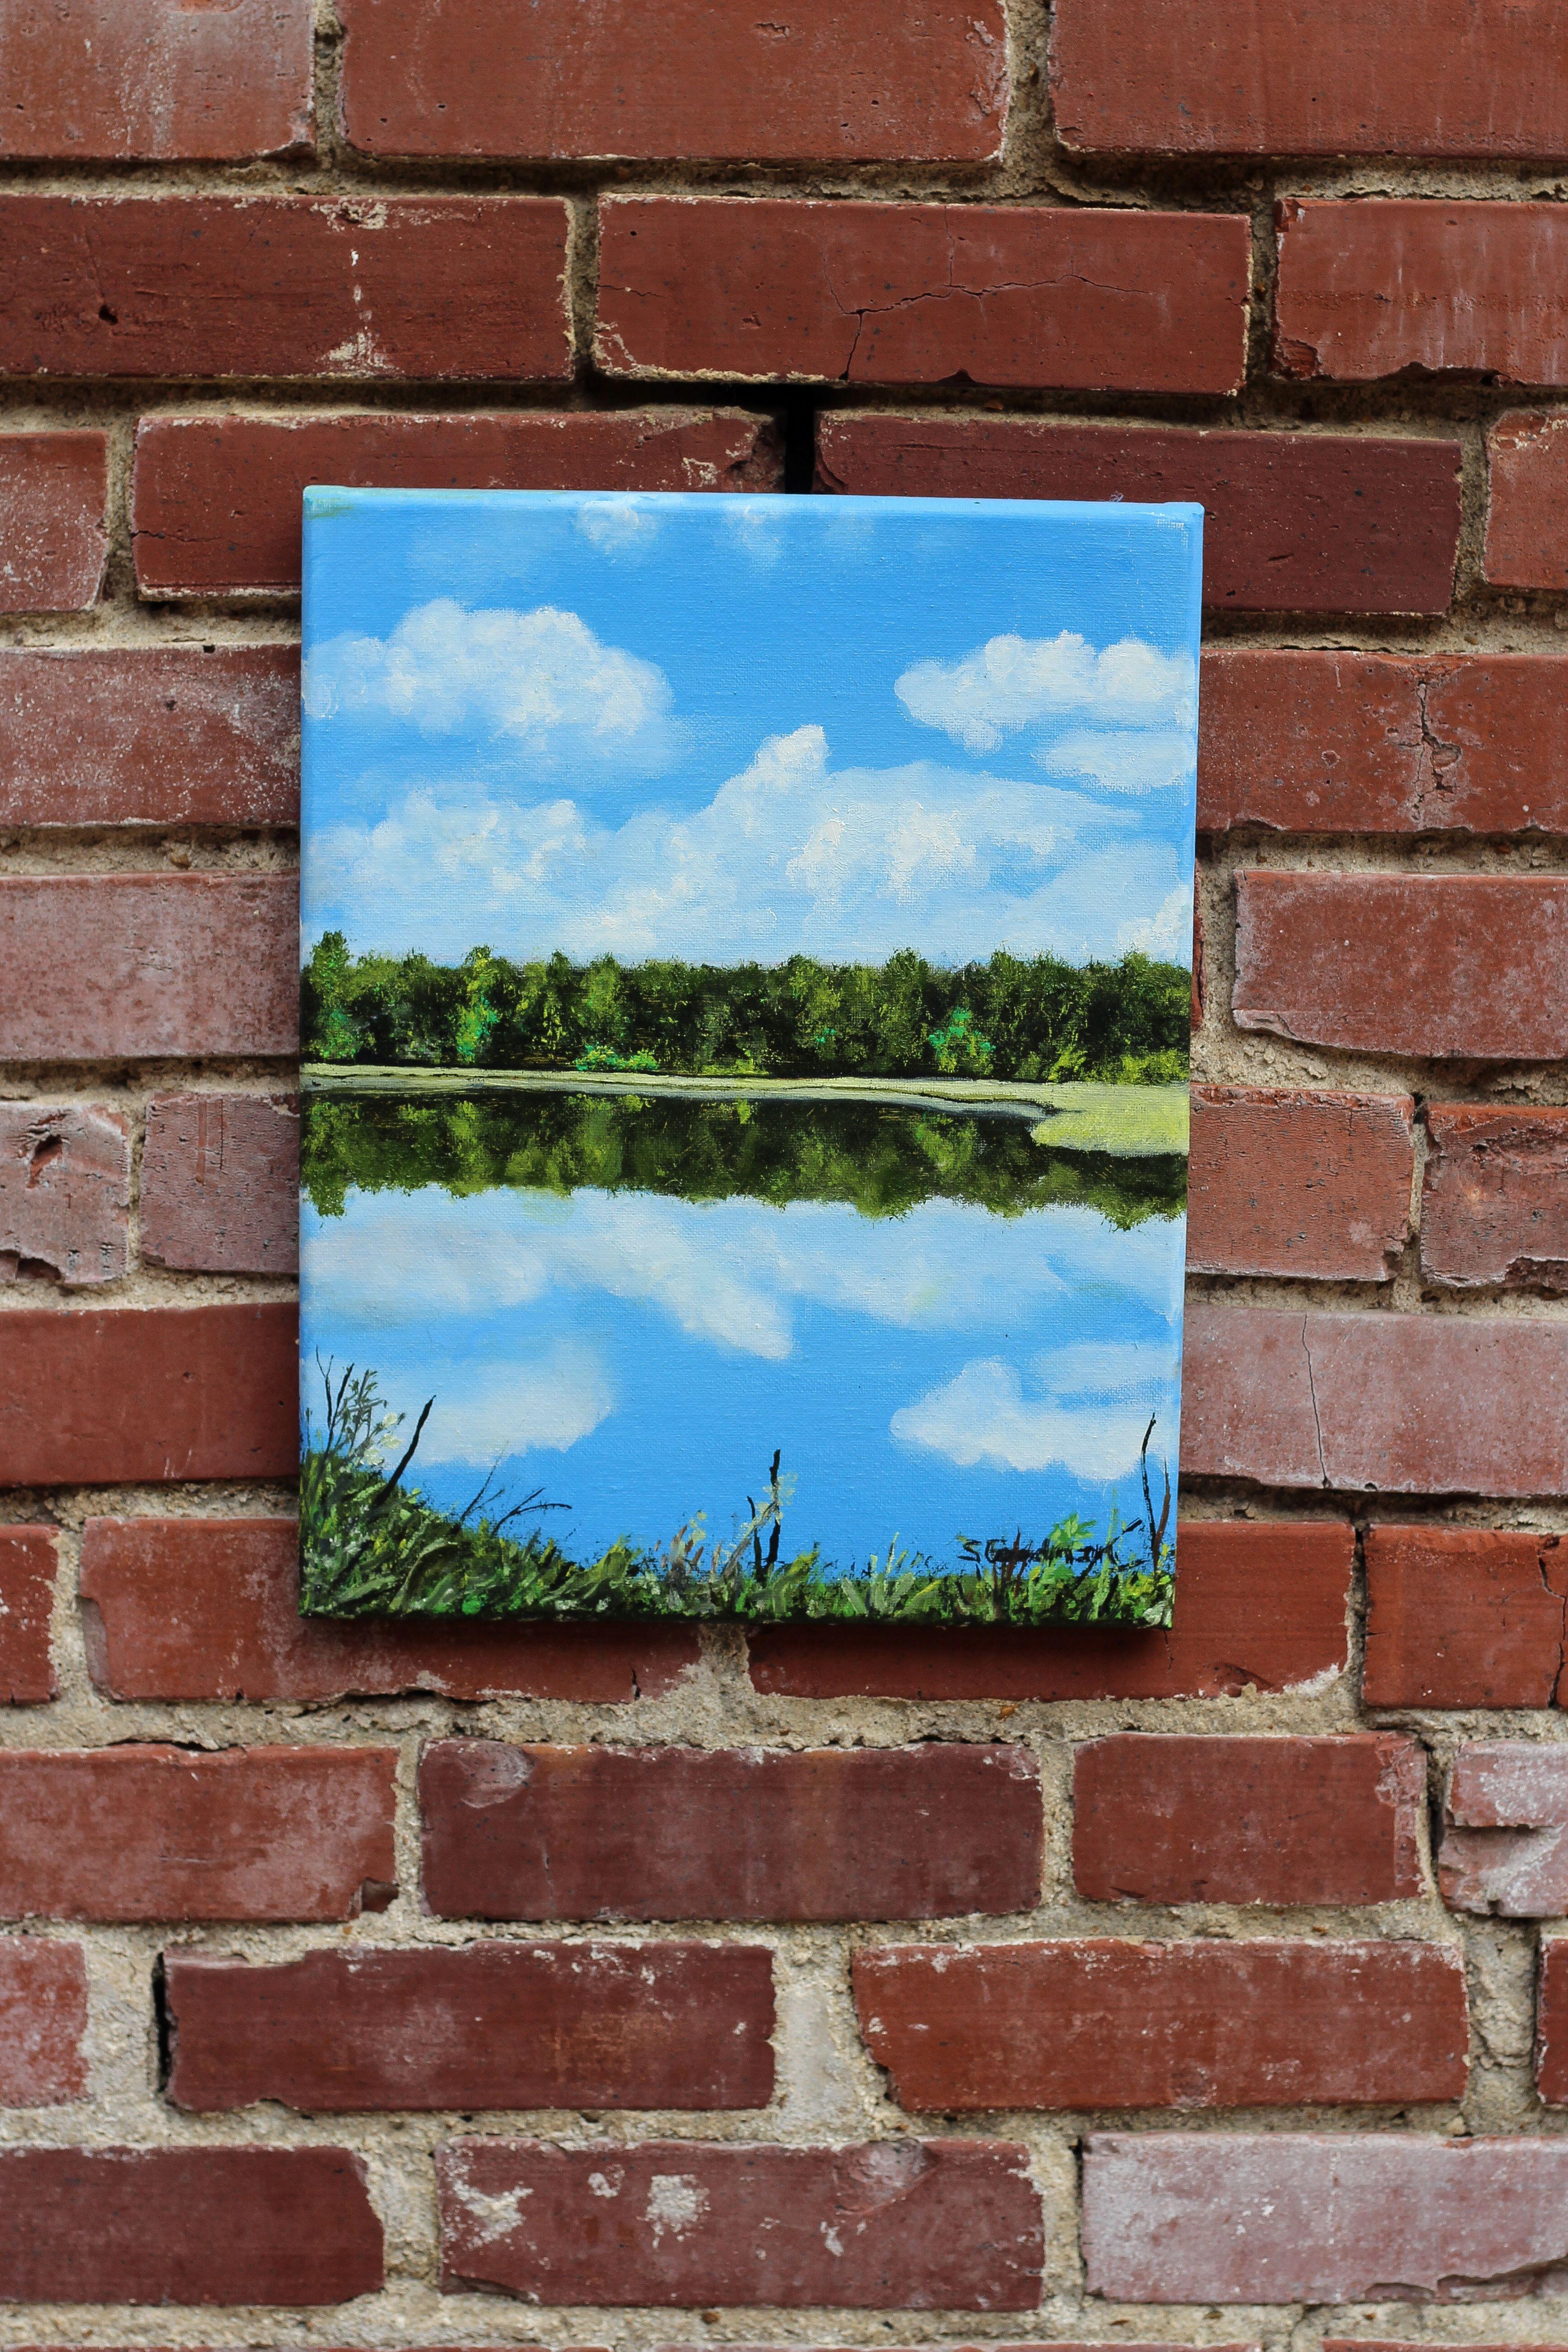 <p>Kommentare der Künstlerin<br>Die Künstlerin Shela Goodman zeigt einen ruhigen Blick auf einen Fluss mit üppiger Vegetation. Wolken und Bäume reihen sich aneinander und spiegeln sich im Wasser, während das Blattwerk den unteren Teil der Szene